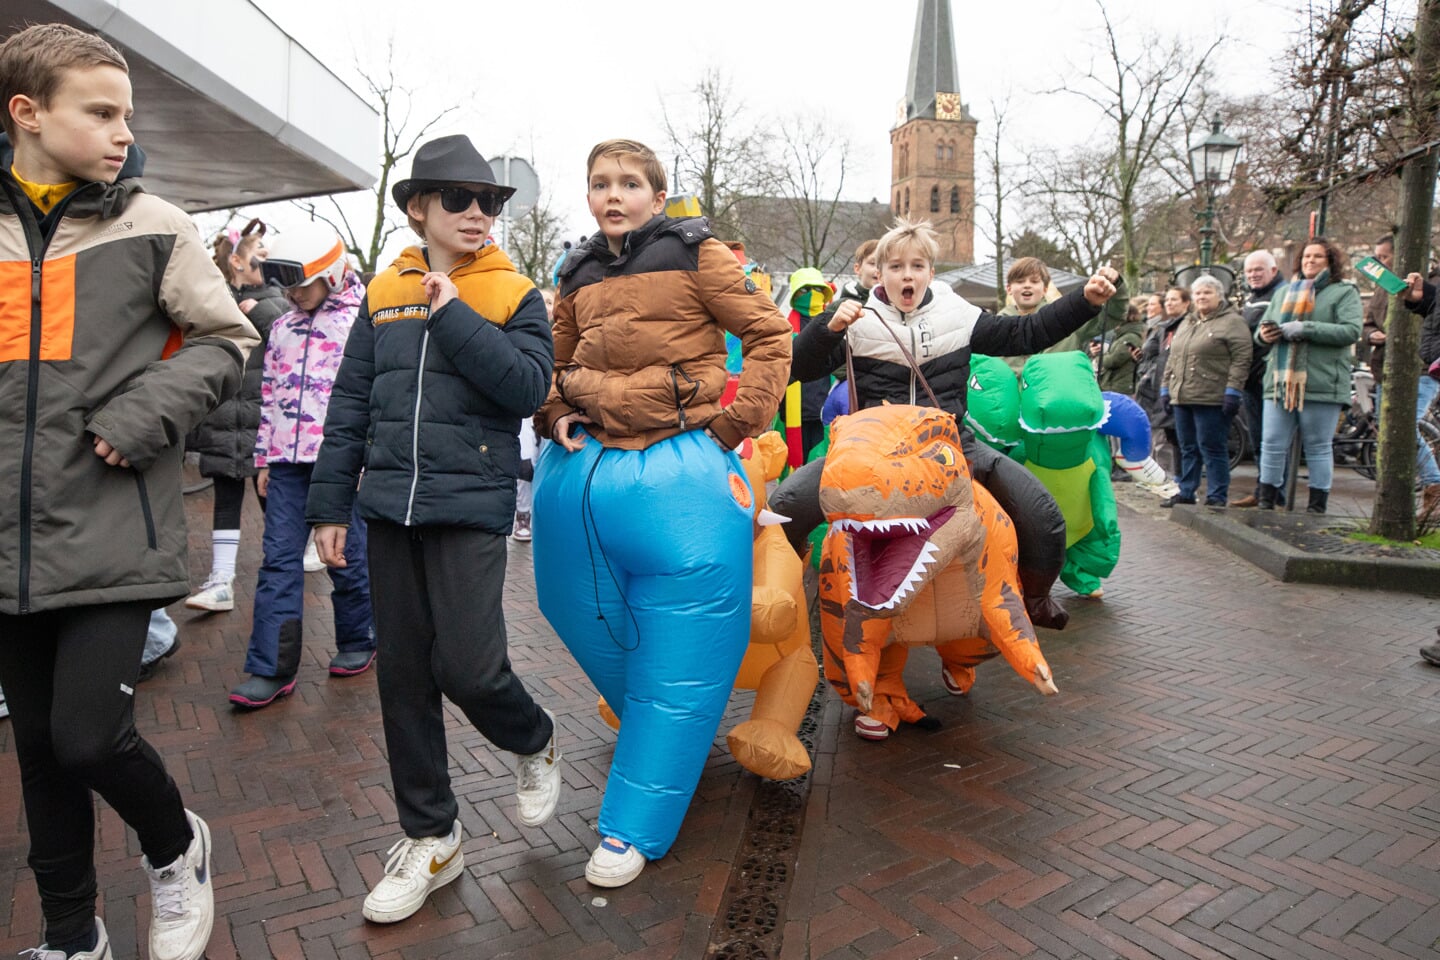 Kleintje Carnaval in Baarn groots gevierd.